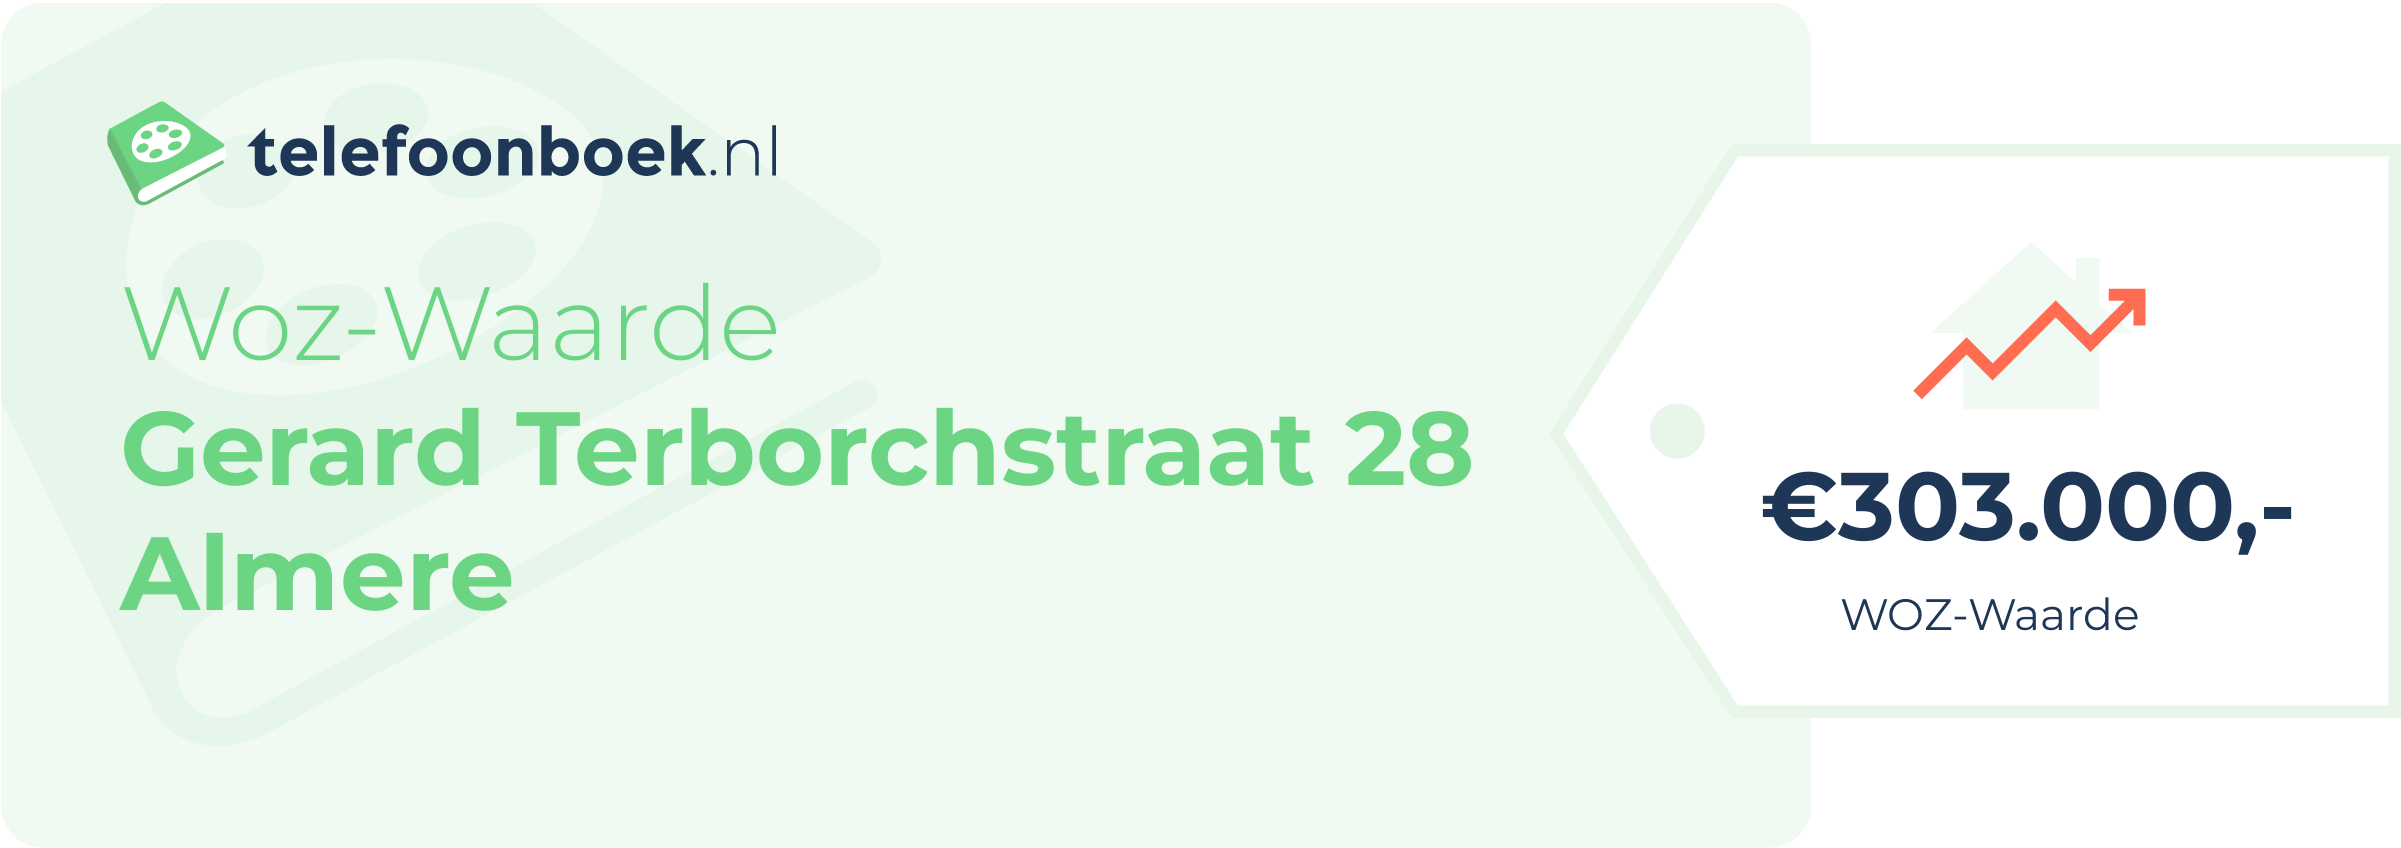 WOZ-waarde Gerard Terborchstraat 28 Almere